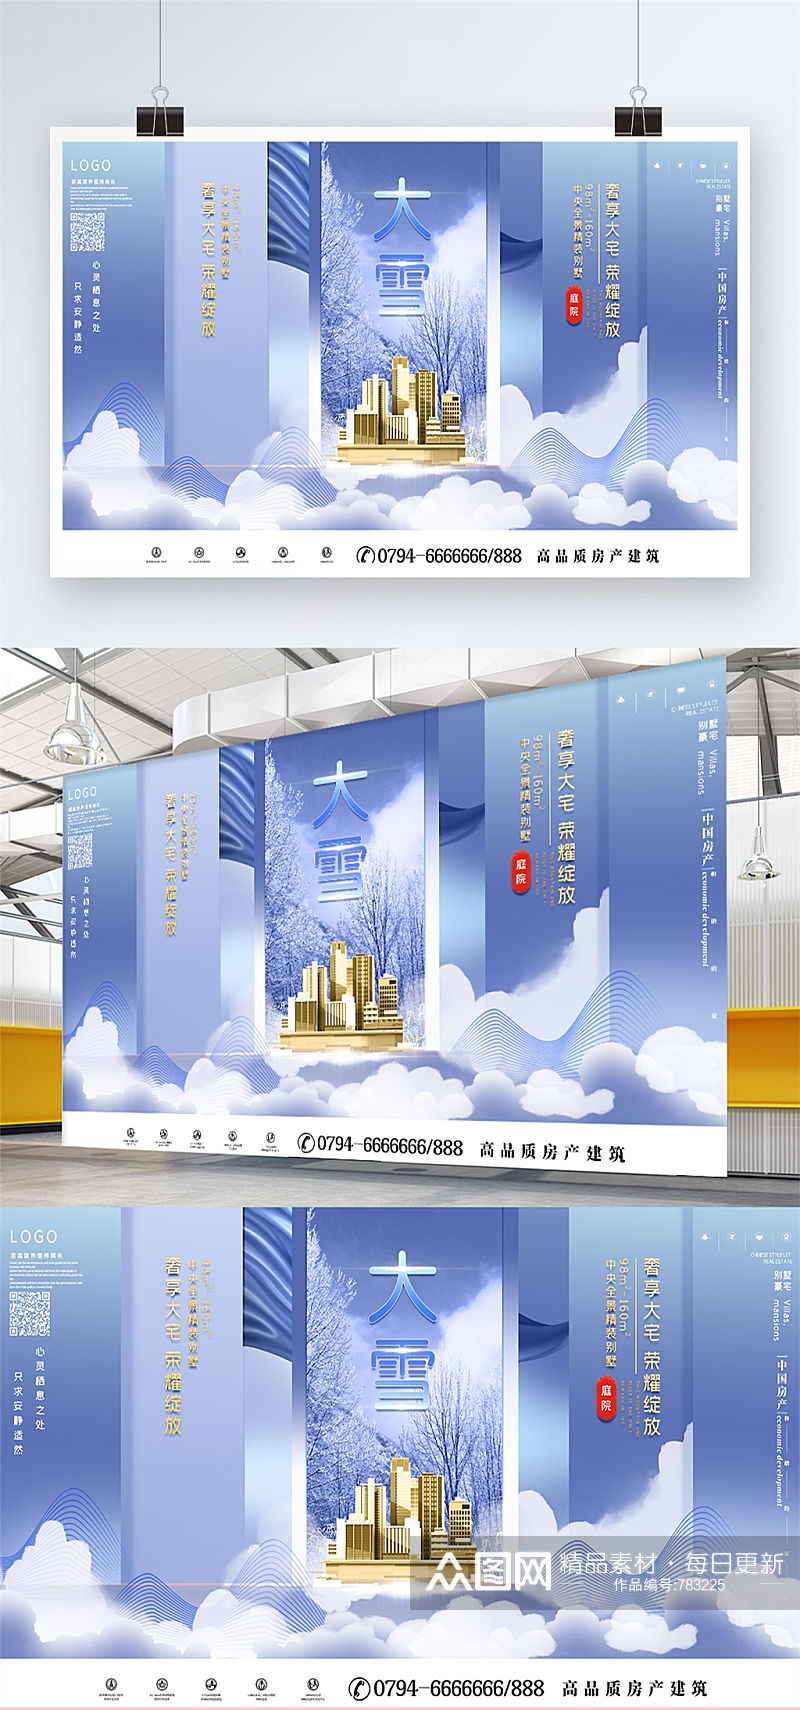 大雪地产手绘中国风高端大气宣传促销展板素材